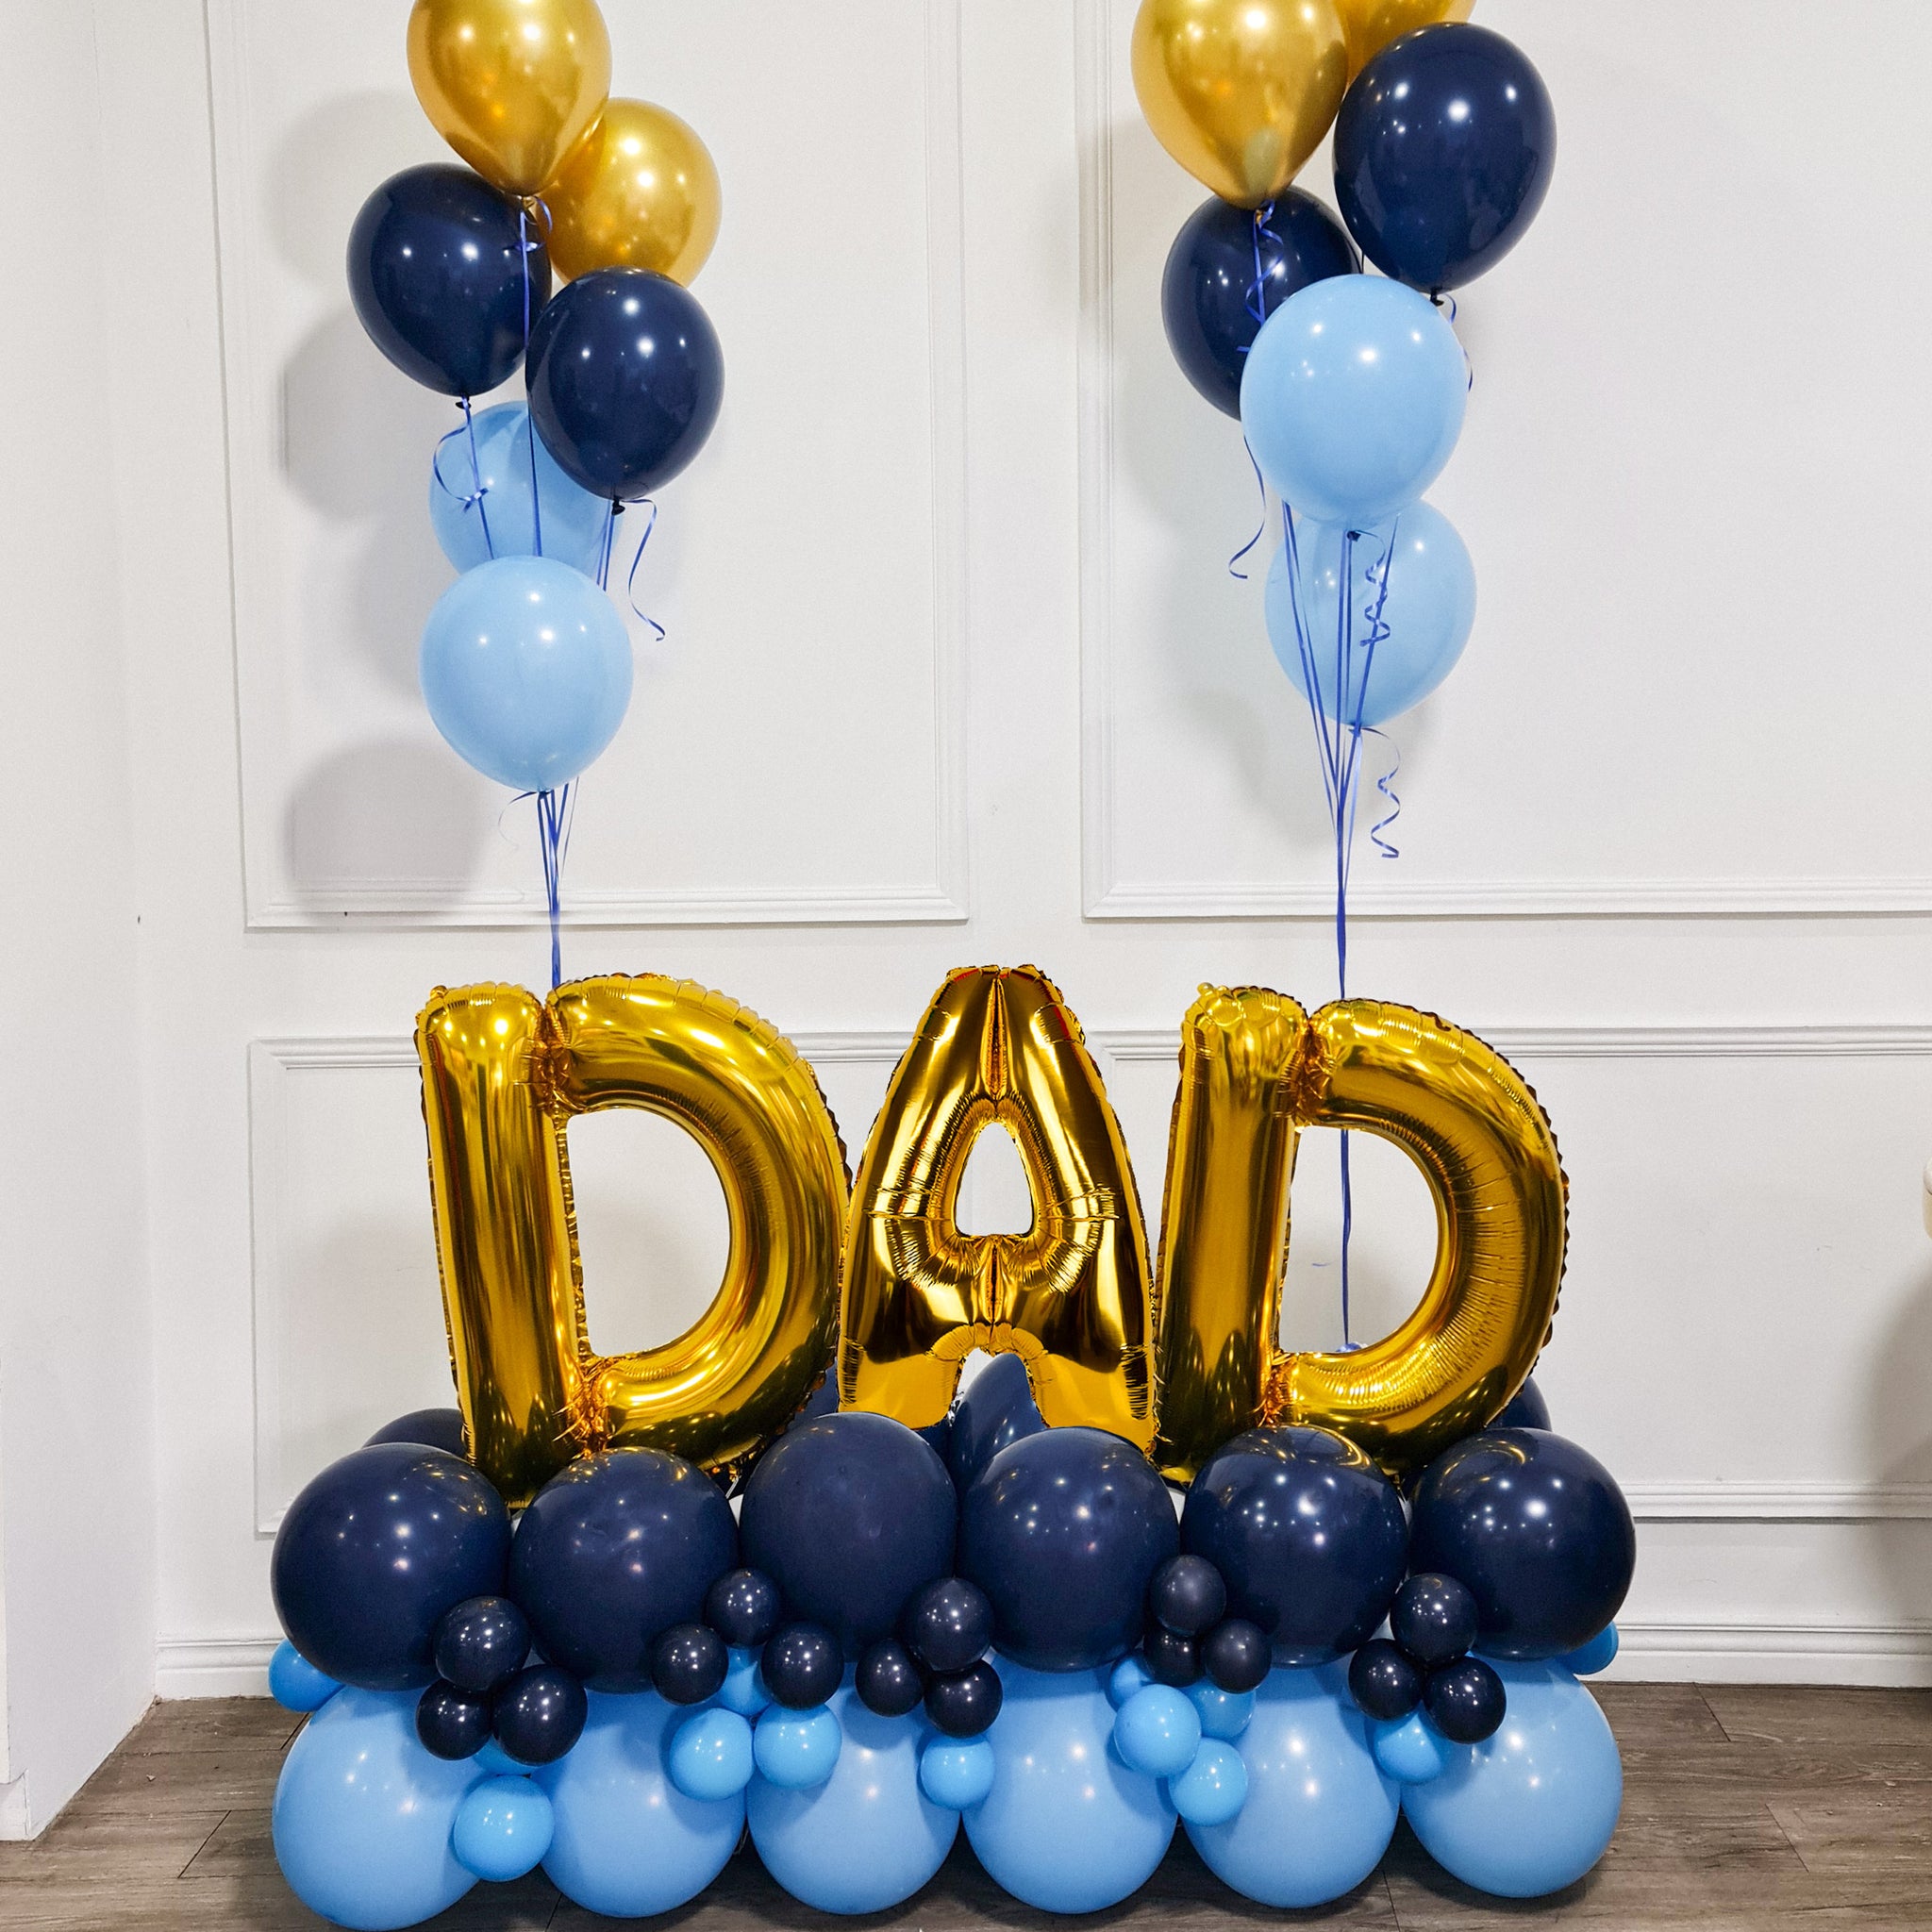 DAD or PAPA Balloon Sculpture